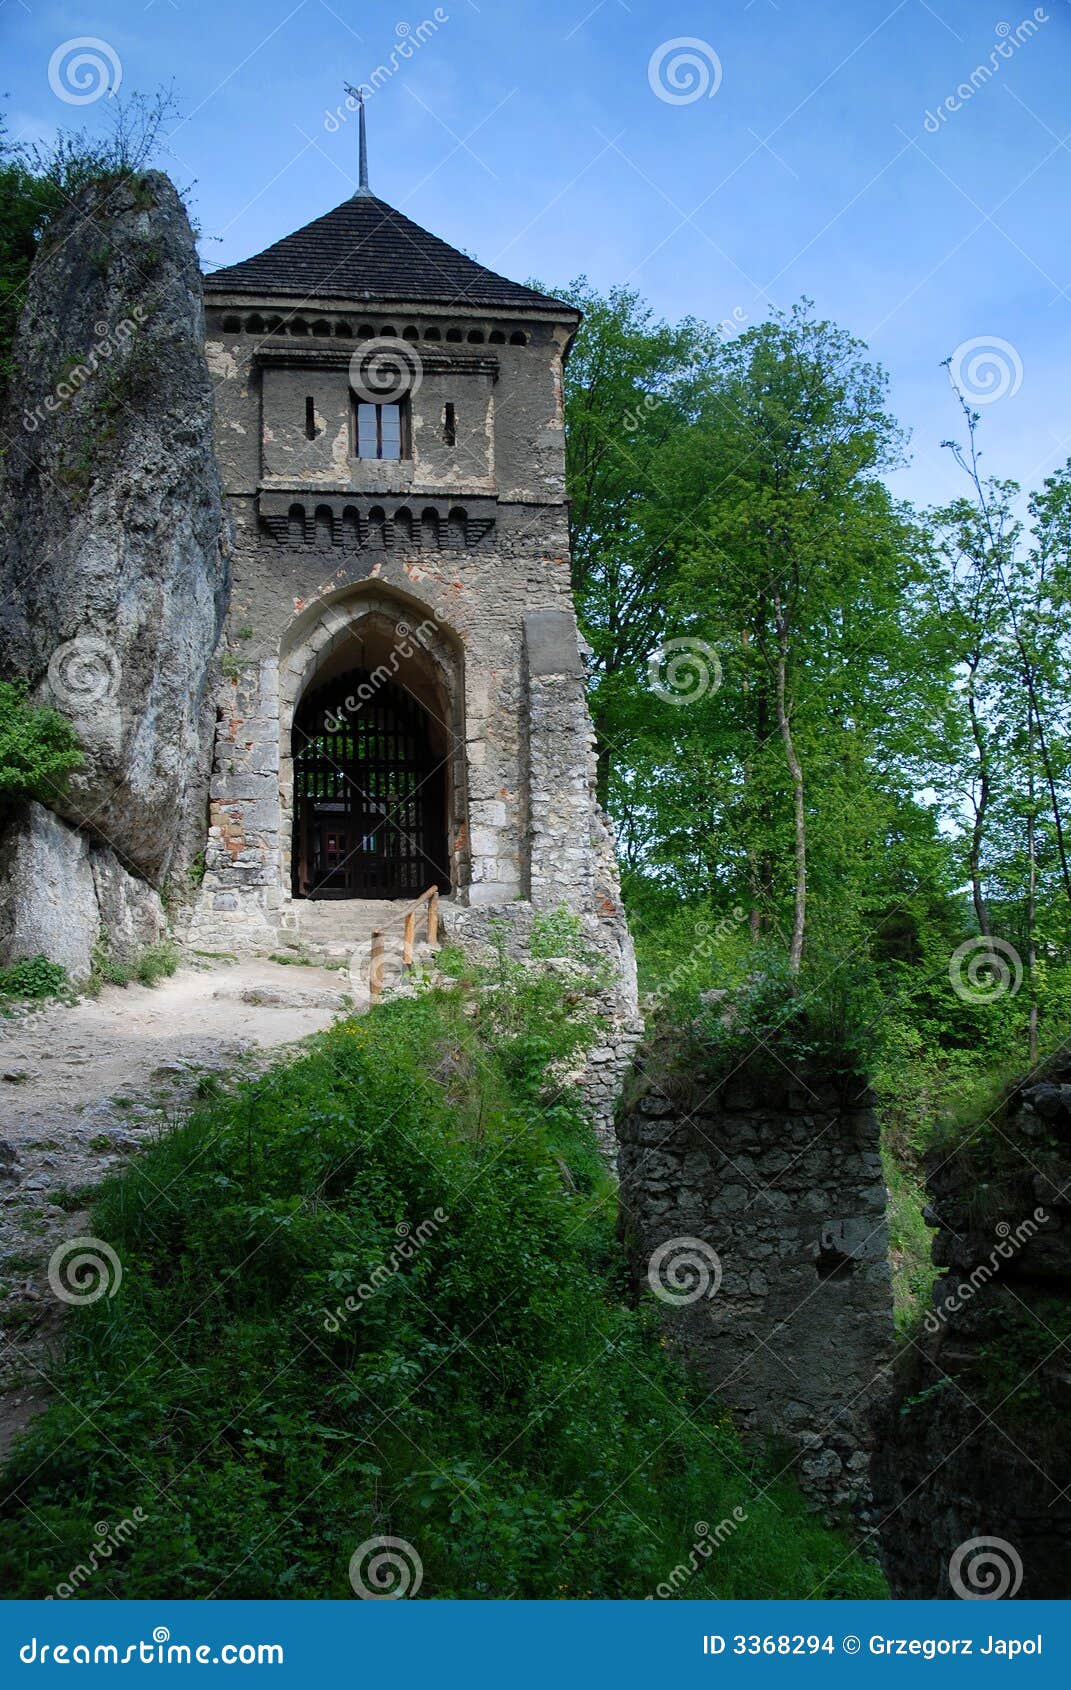 castle of ojcow